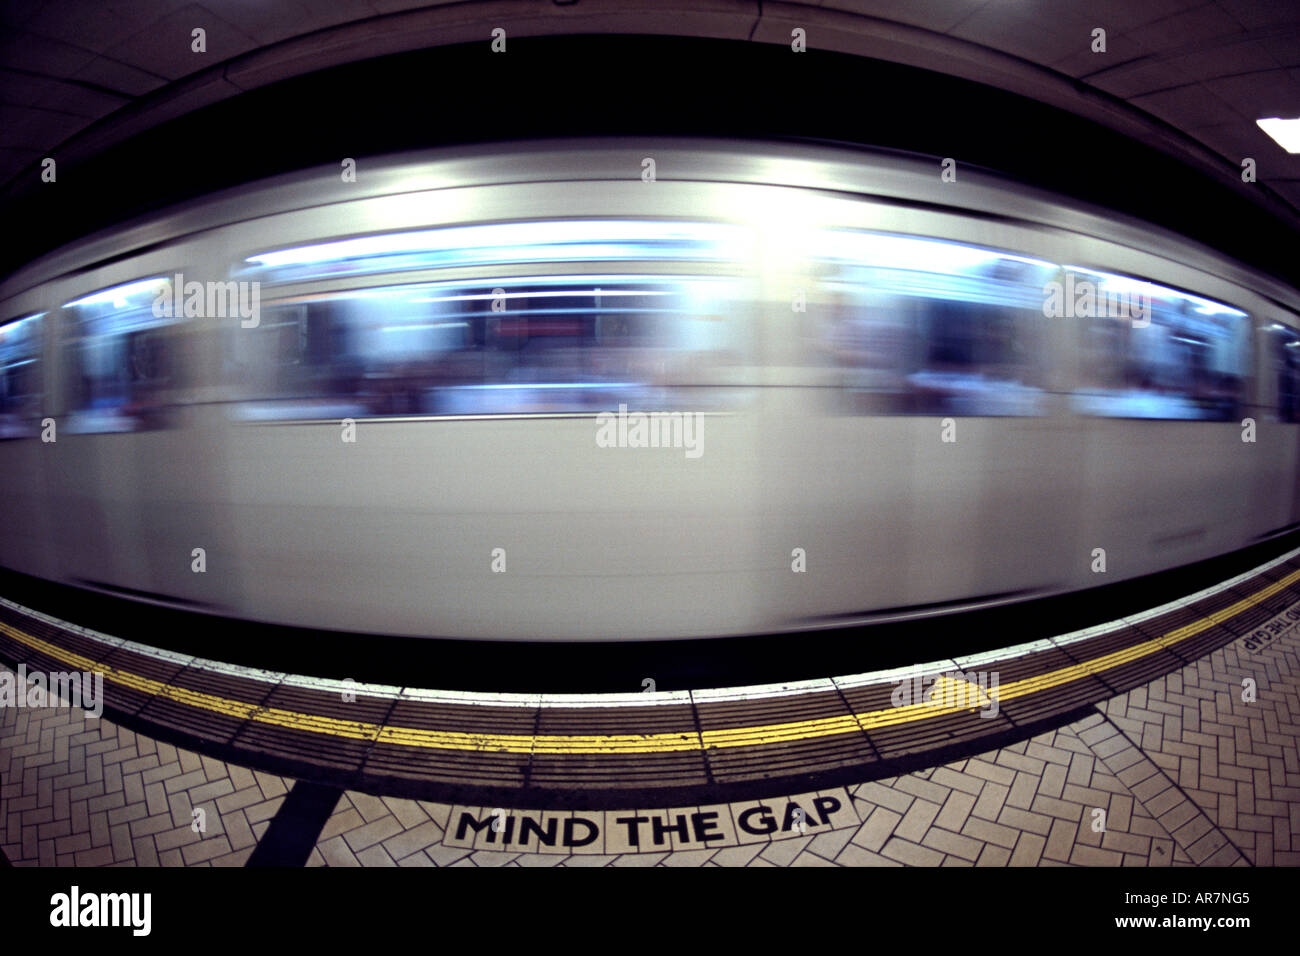 District Line u-Bahn vorbei an einer Plattform in London. Fotografiert mit einem Fisheye-Objektiv. Stockfoto